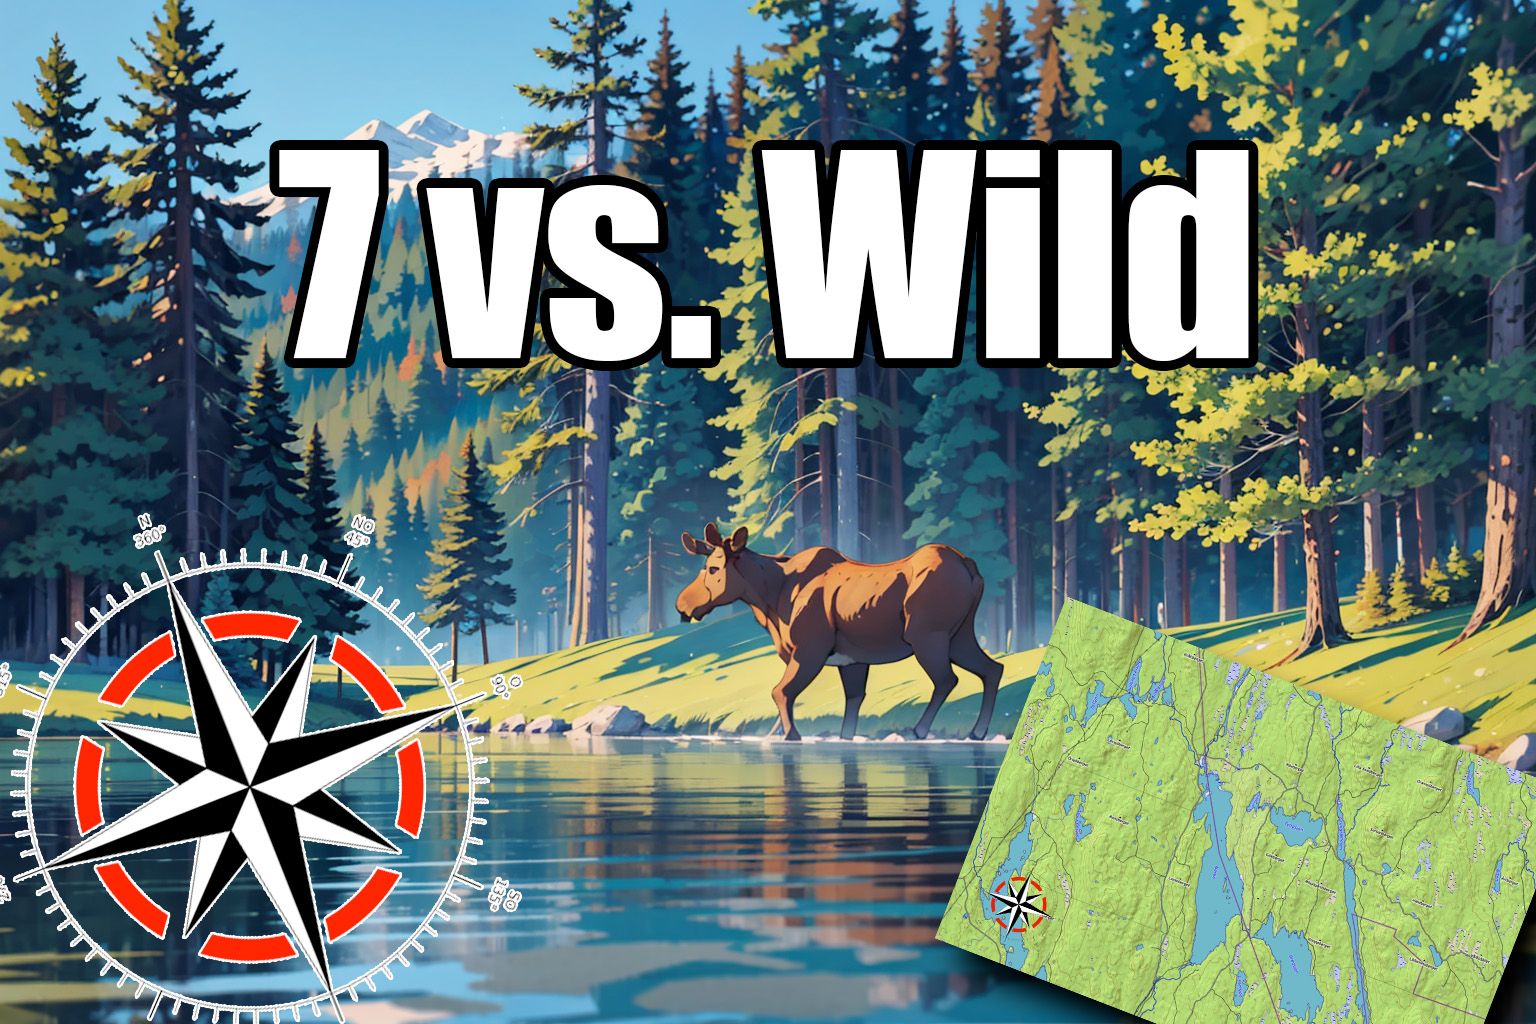 7 vs. Wild: Wo lässt sich 7 vs Wild gucken?